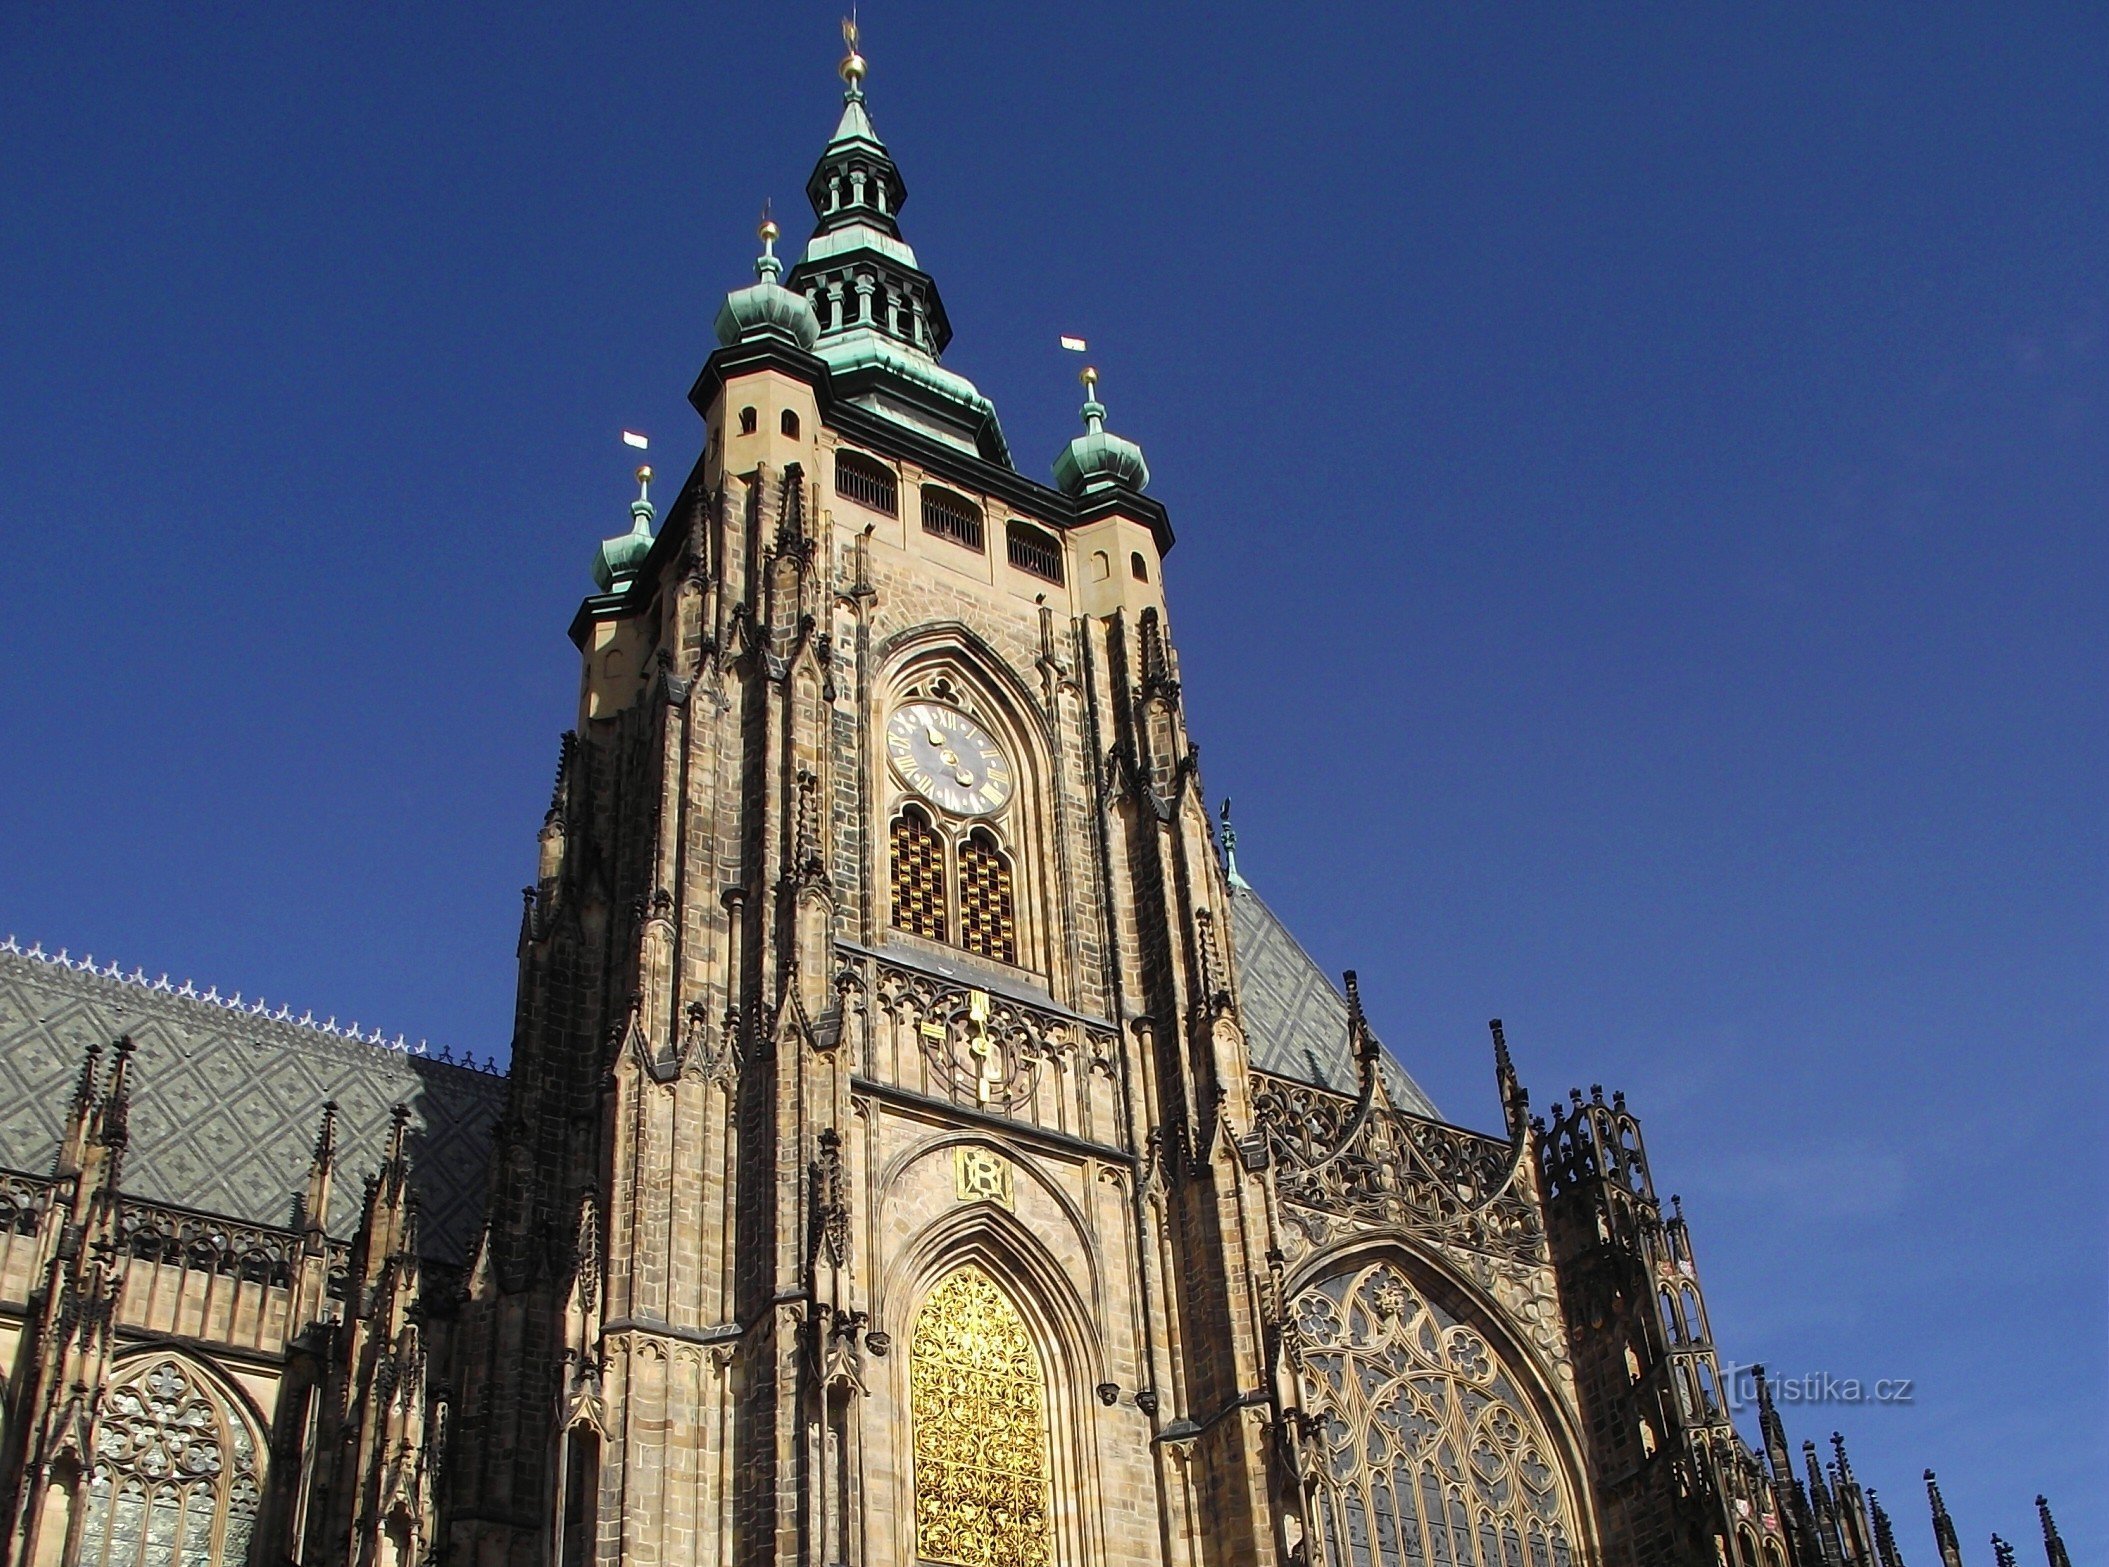 Prag - zvonik katedrale Veliki južni toranj (Praški dvorac)